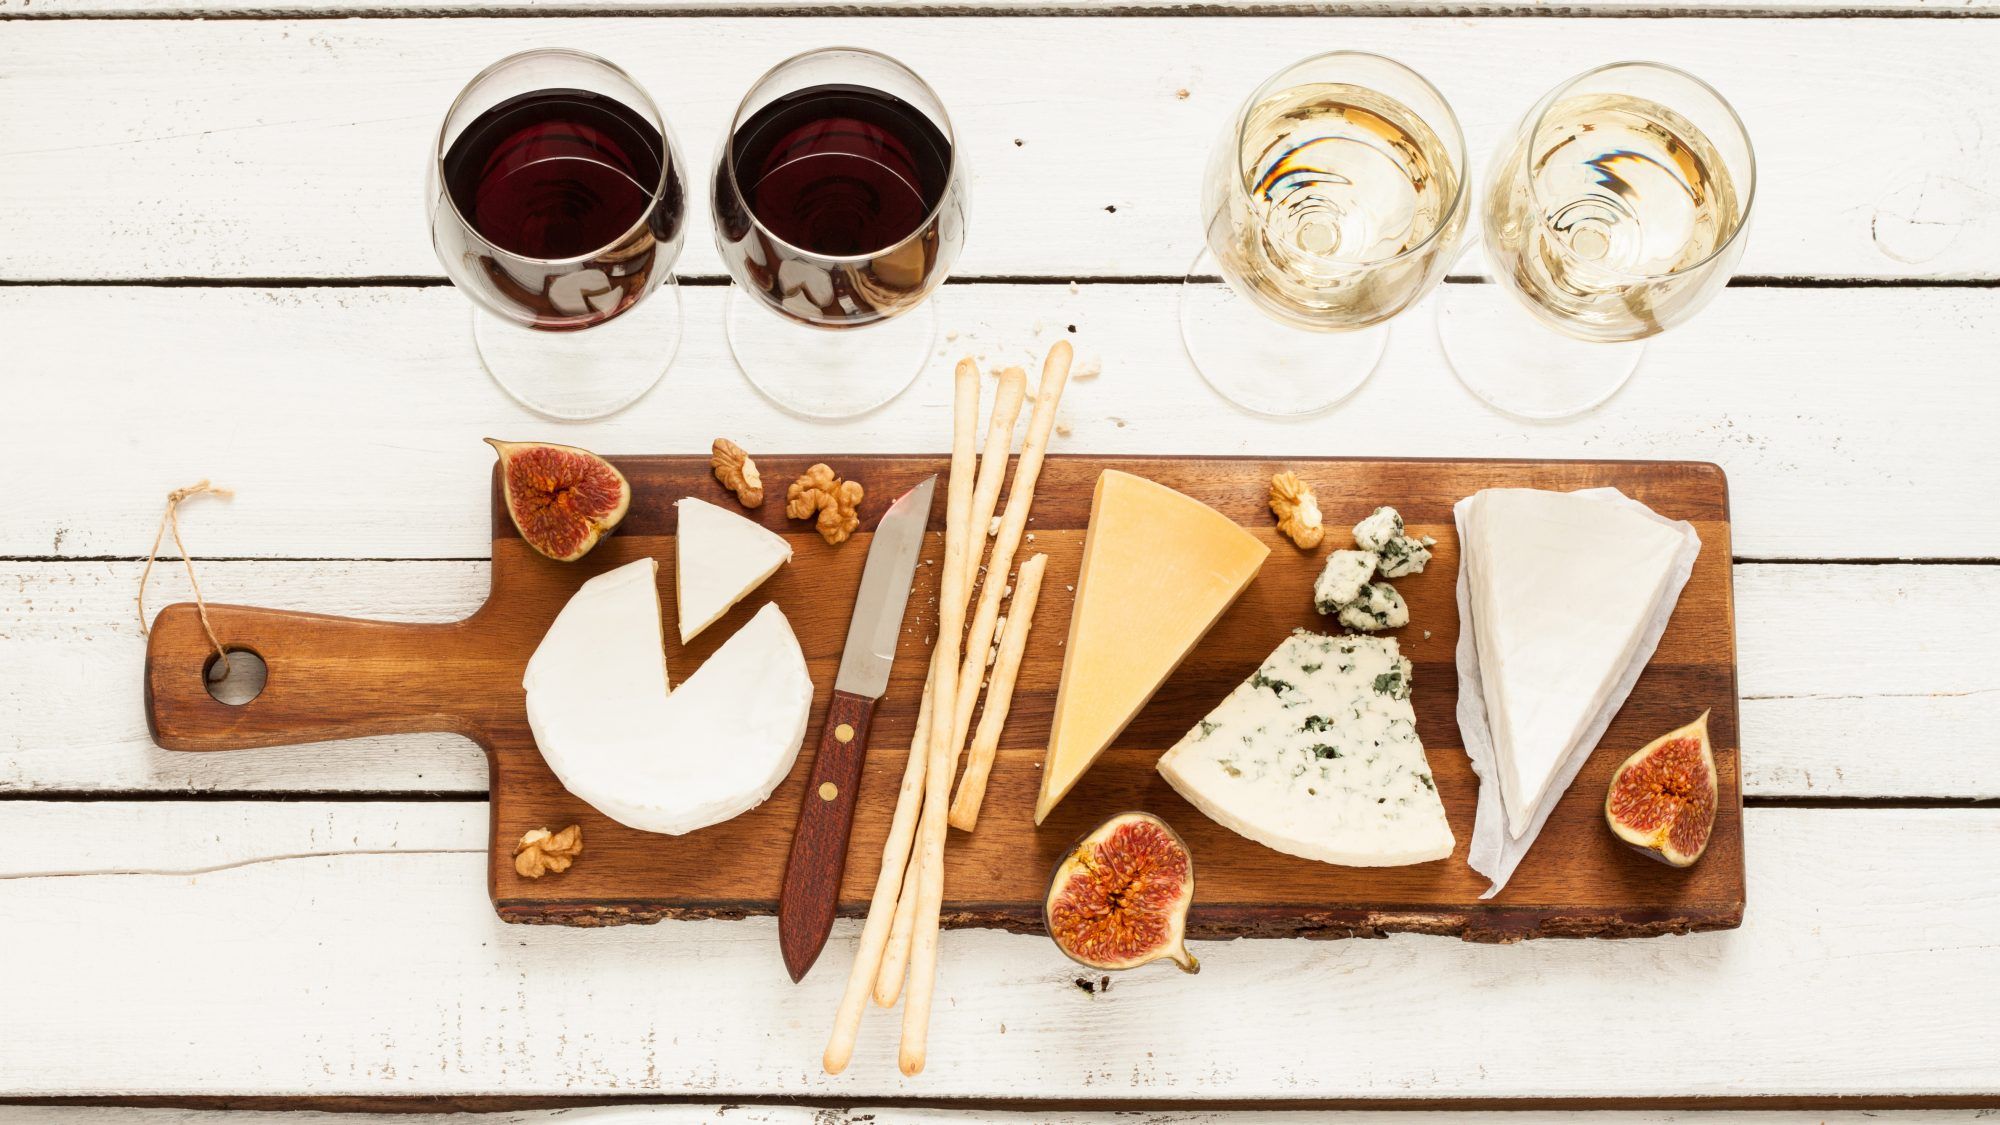 ostfat med vin: misstag av vin och ostparning